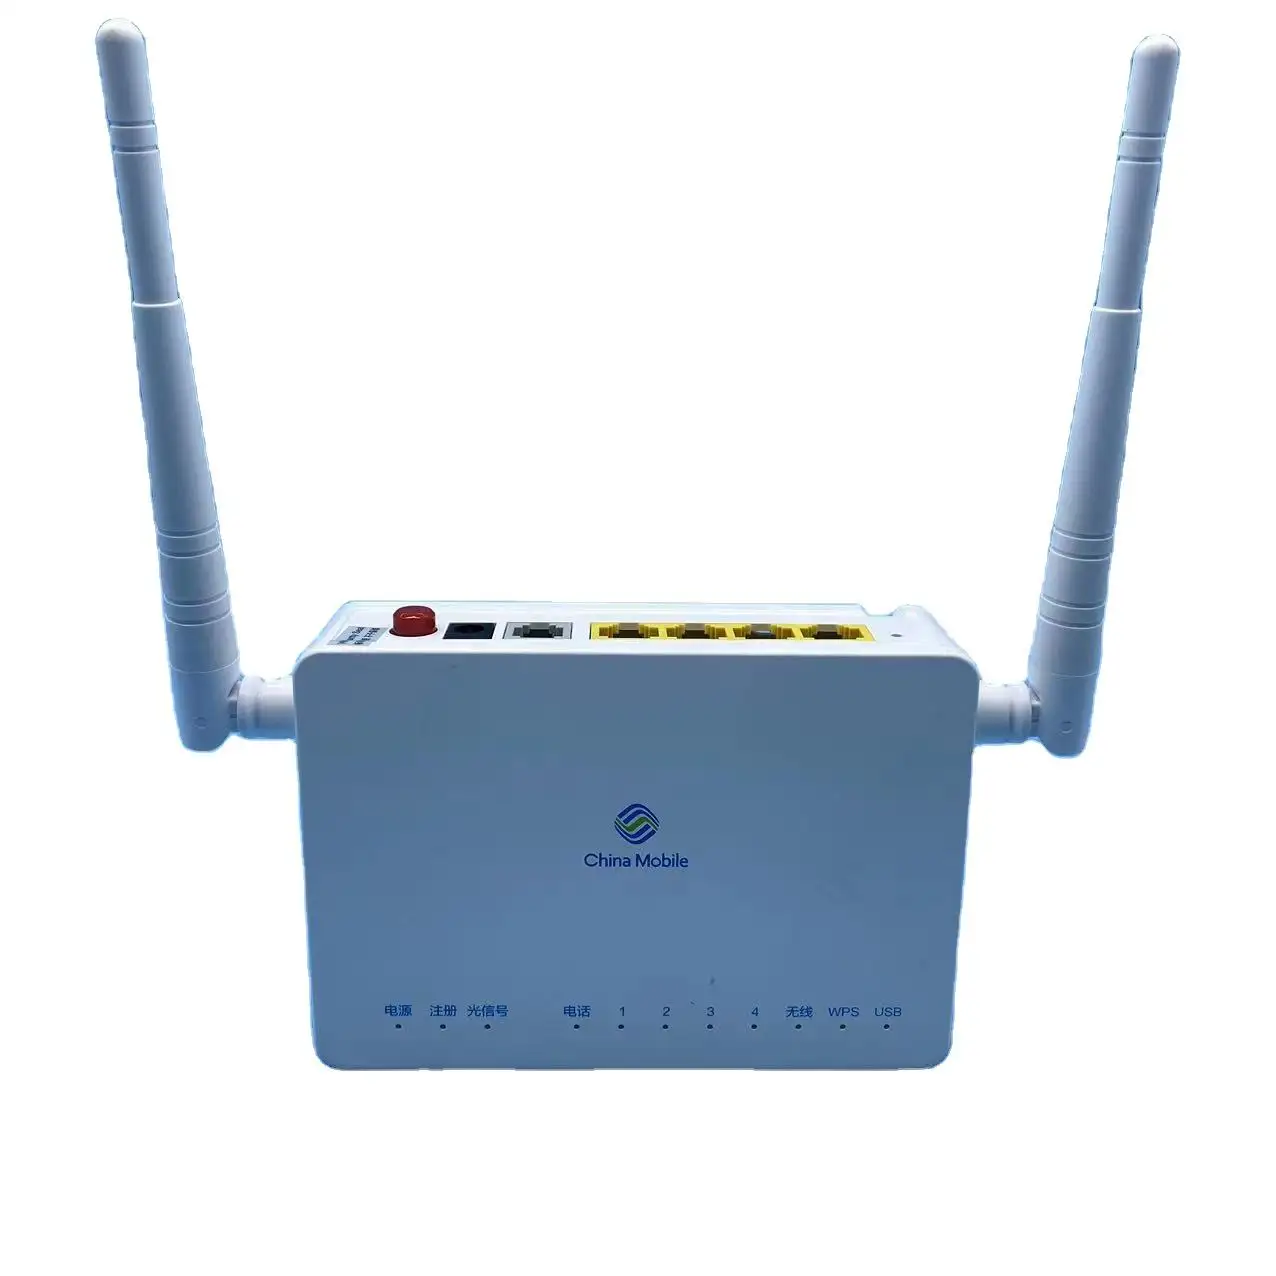 ZTE XPON ONU Routers Routers 4 port LAN 1POT 1POT 1USB FTTH ONT router WIFI Firmware Inggris